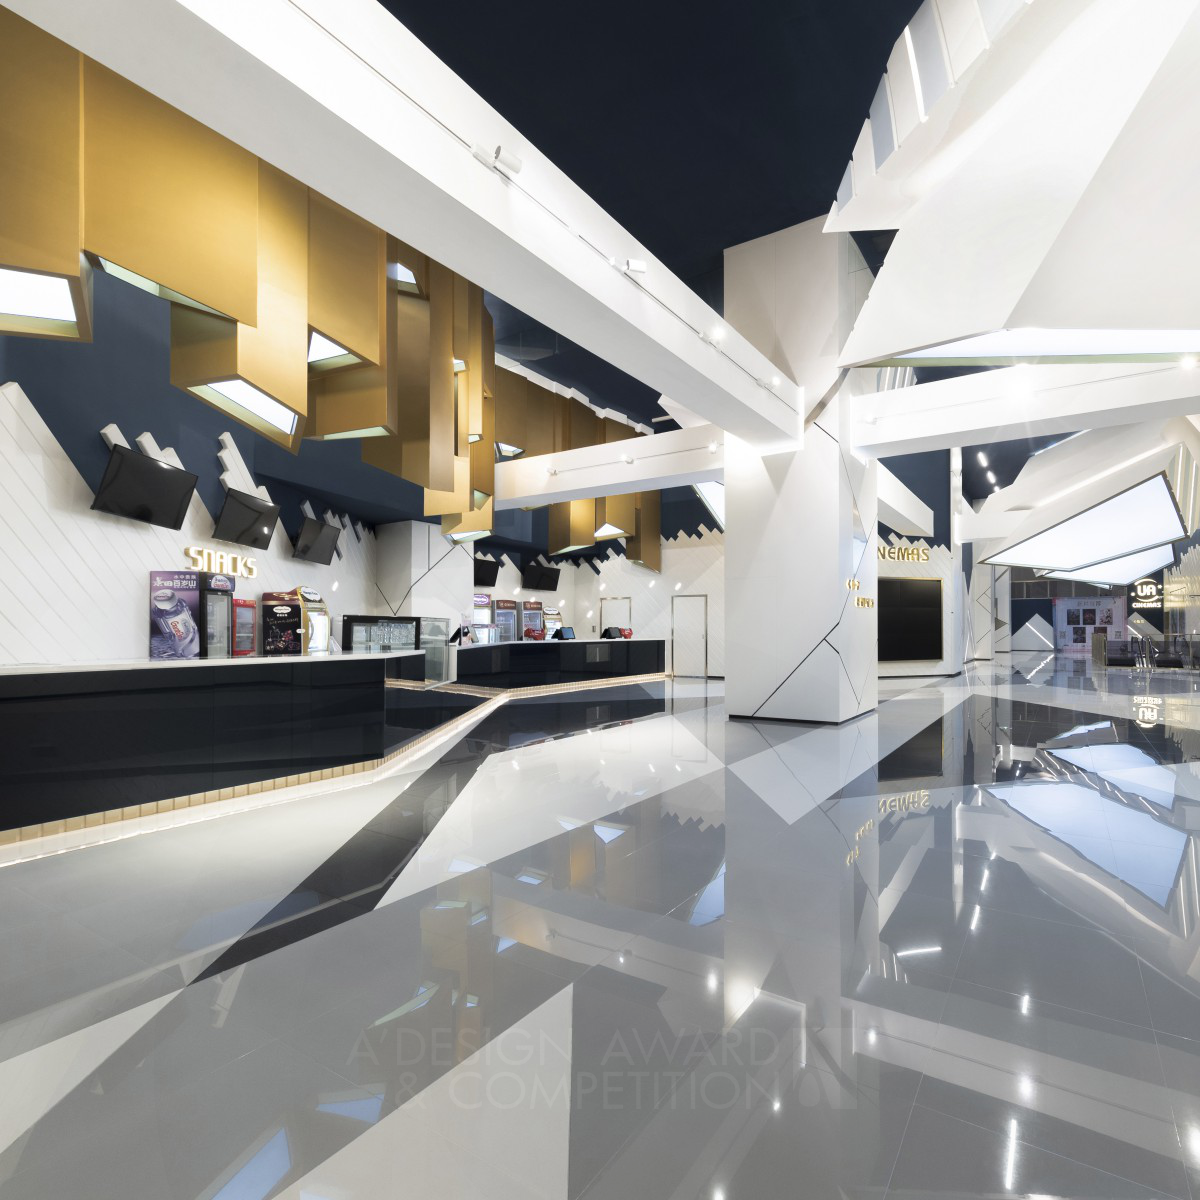 Beauty of Deconstructivism - UA Cinemas <b>Interior Design